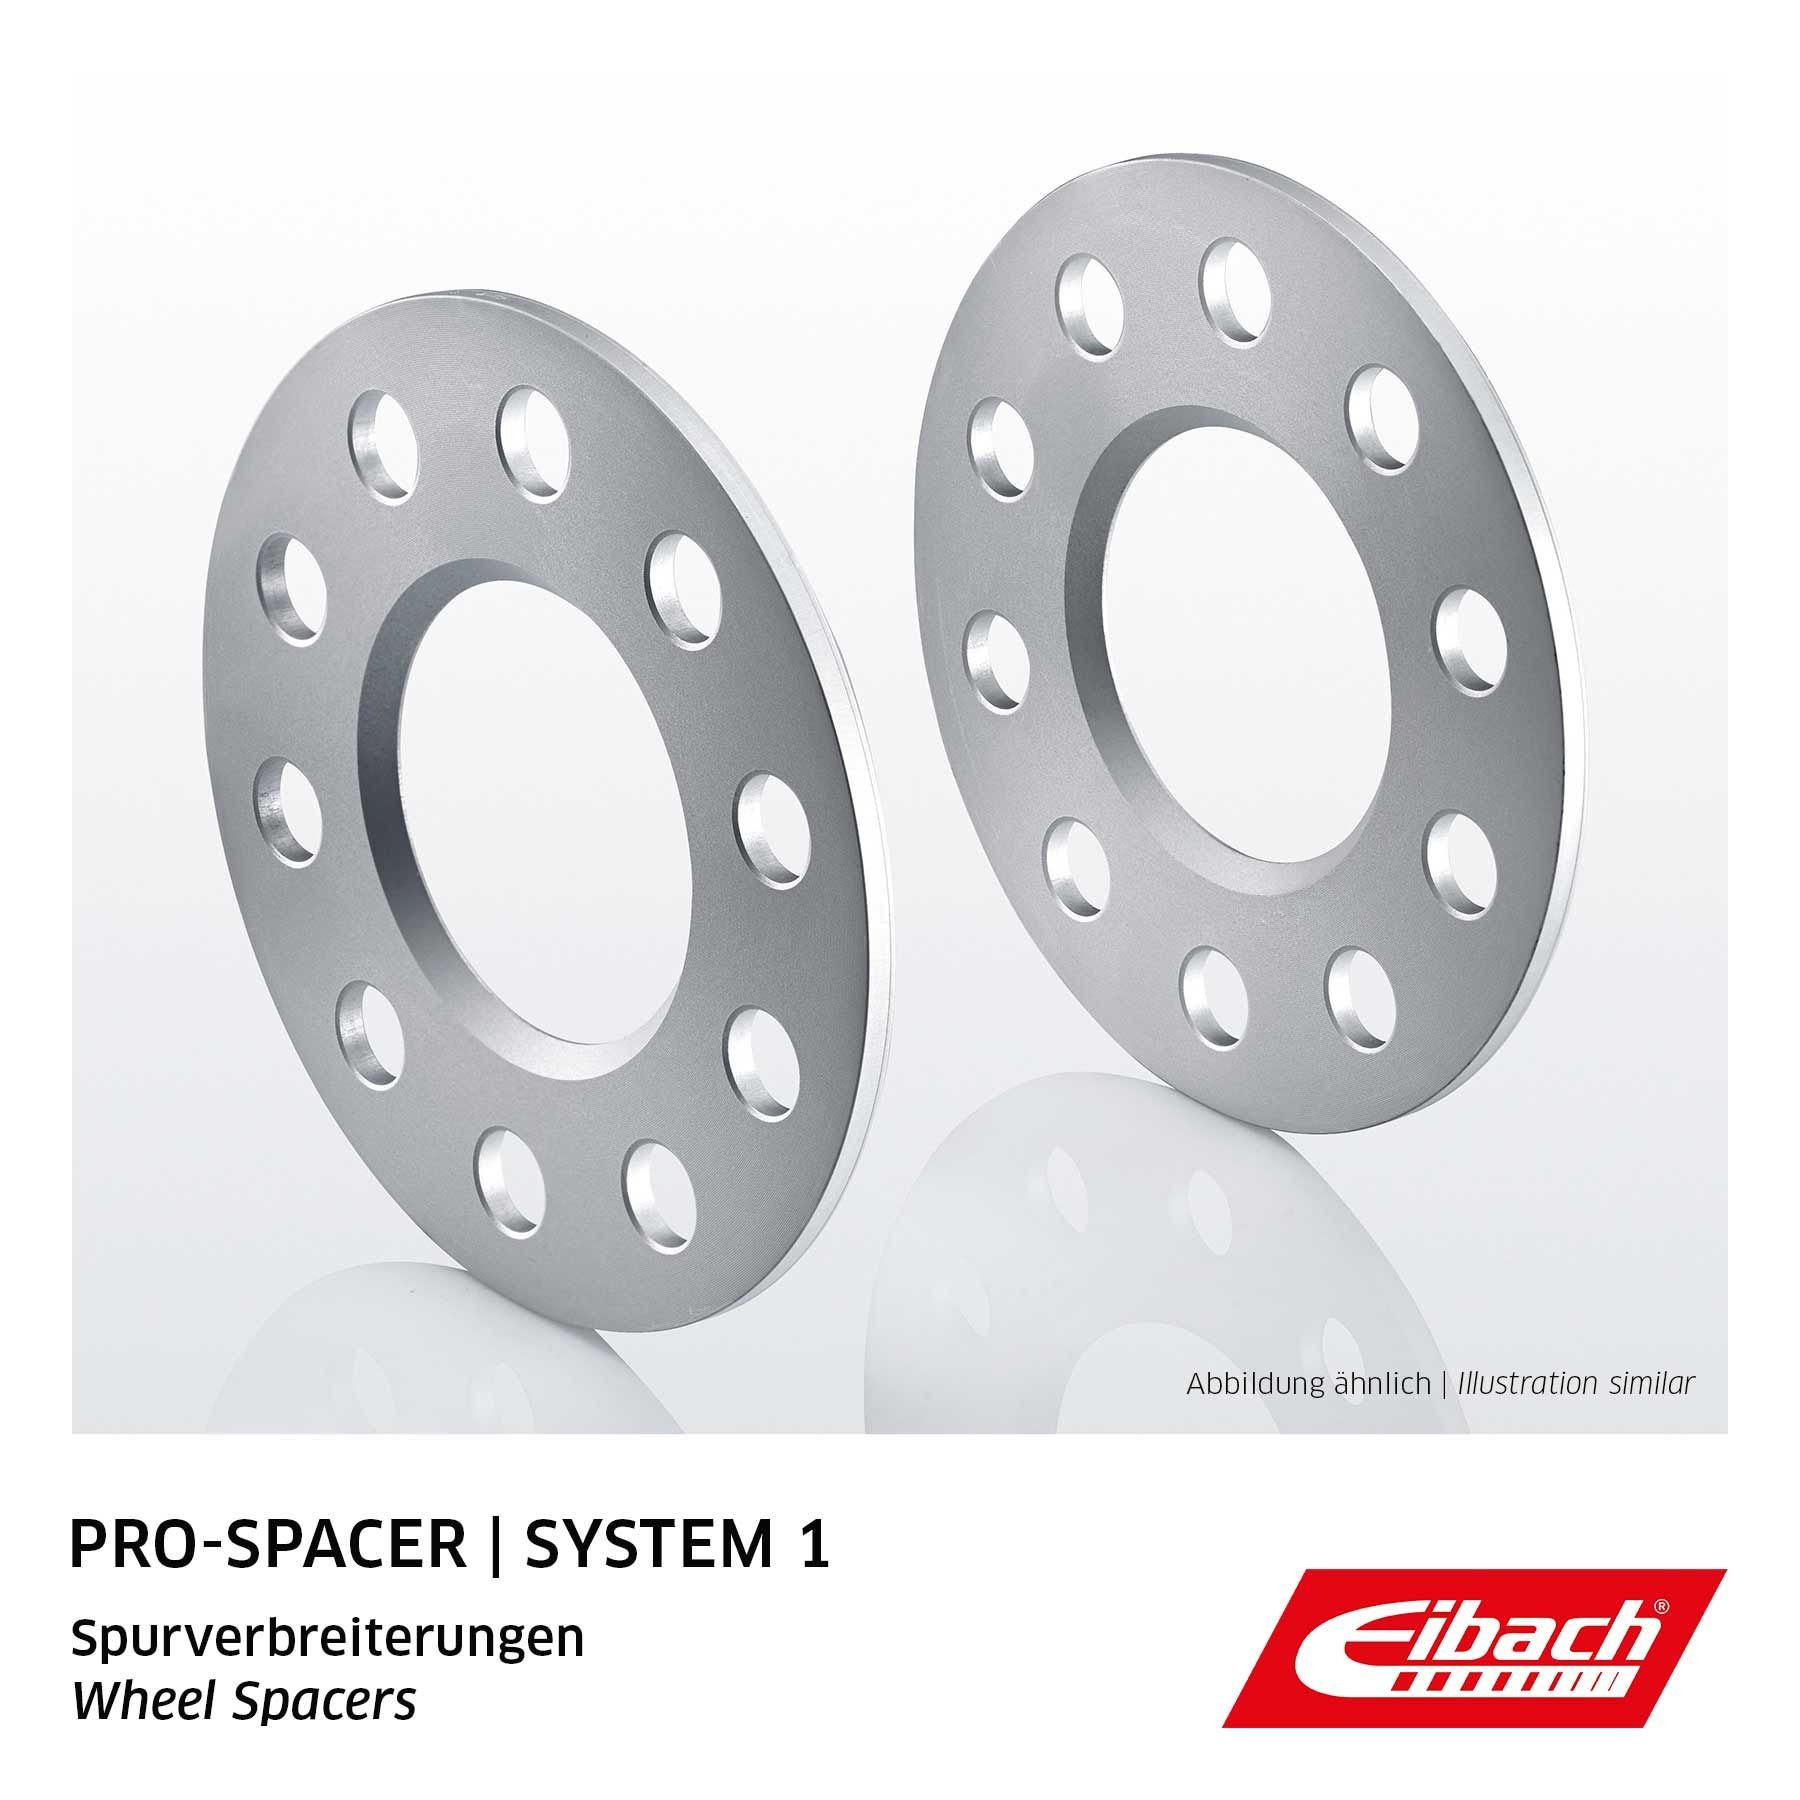 EIBACH 65mm, Pro-Spacer S90-1-10-002 Separador de rueda Medida de rosca: M12x1,5, Corona taladros Ø: 110mm